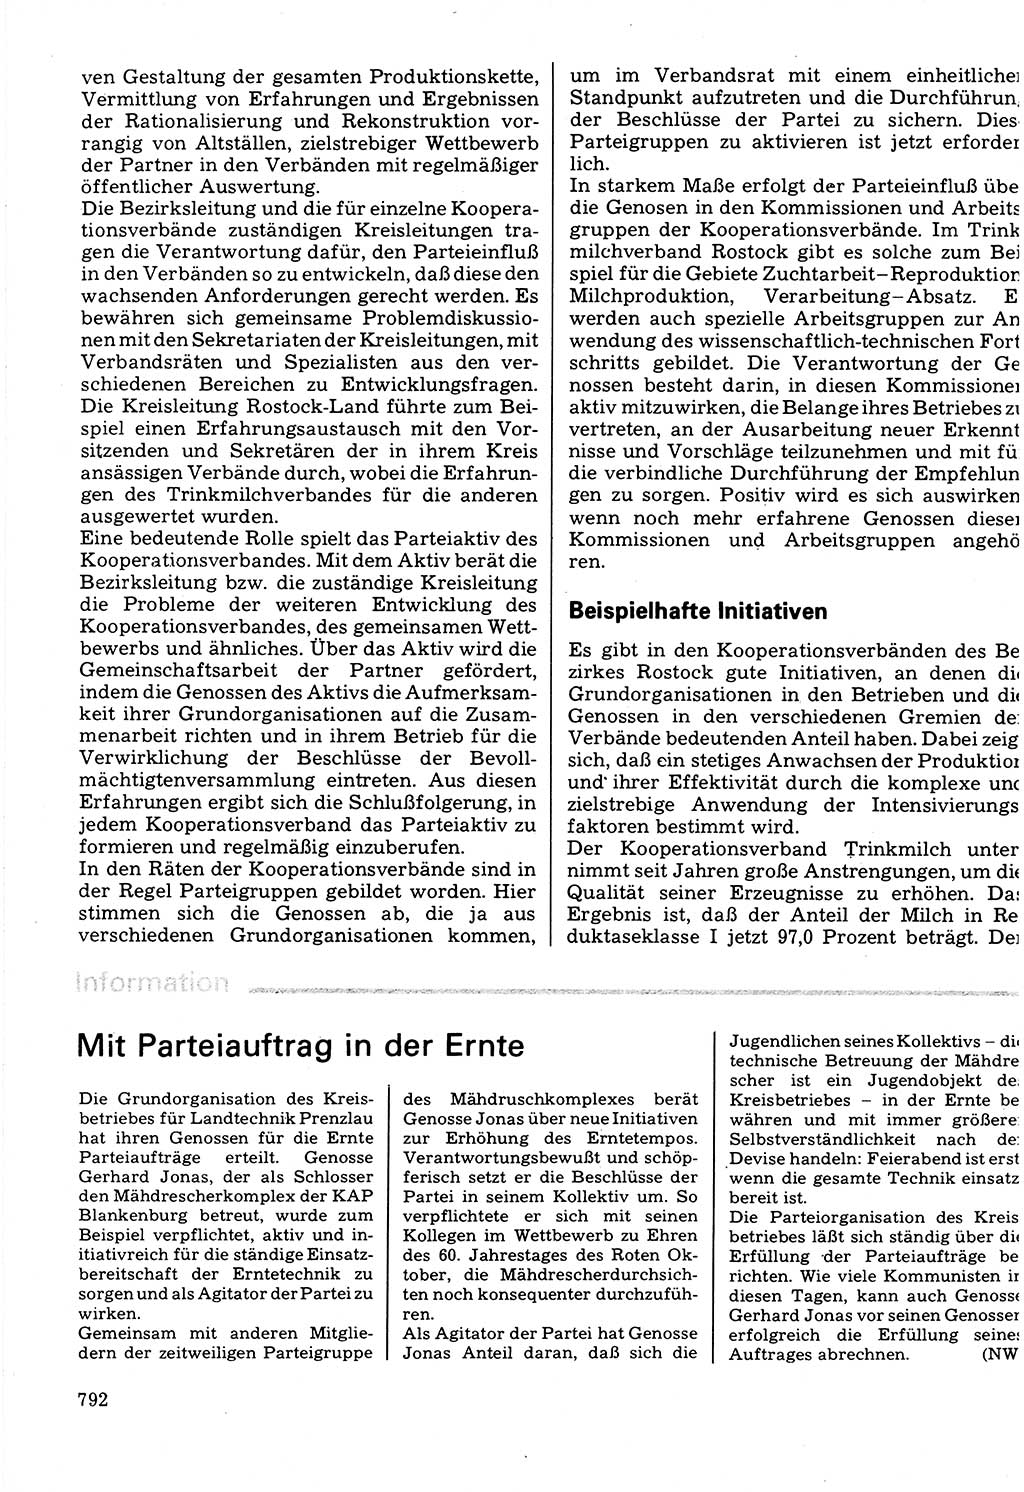 Neuer Weg (NW), Organ des Zentralkomitees (ZK) der SED (Sozialistische Einheitspartei Deutschlands) für Fragen des Parteilebens, 32. Jahrgang [Deutsche Demokratische Republik (DDR)] 1977, Seite 792 (NW ZK SED DDR 1977, S. 792)